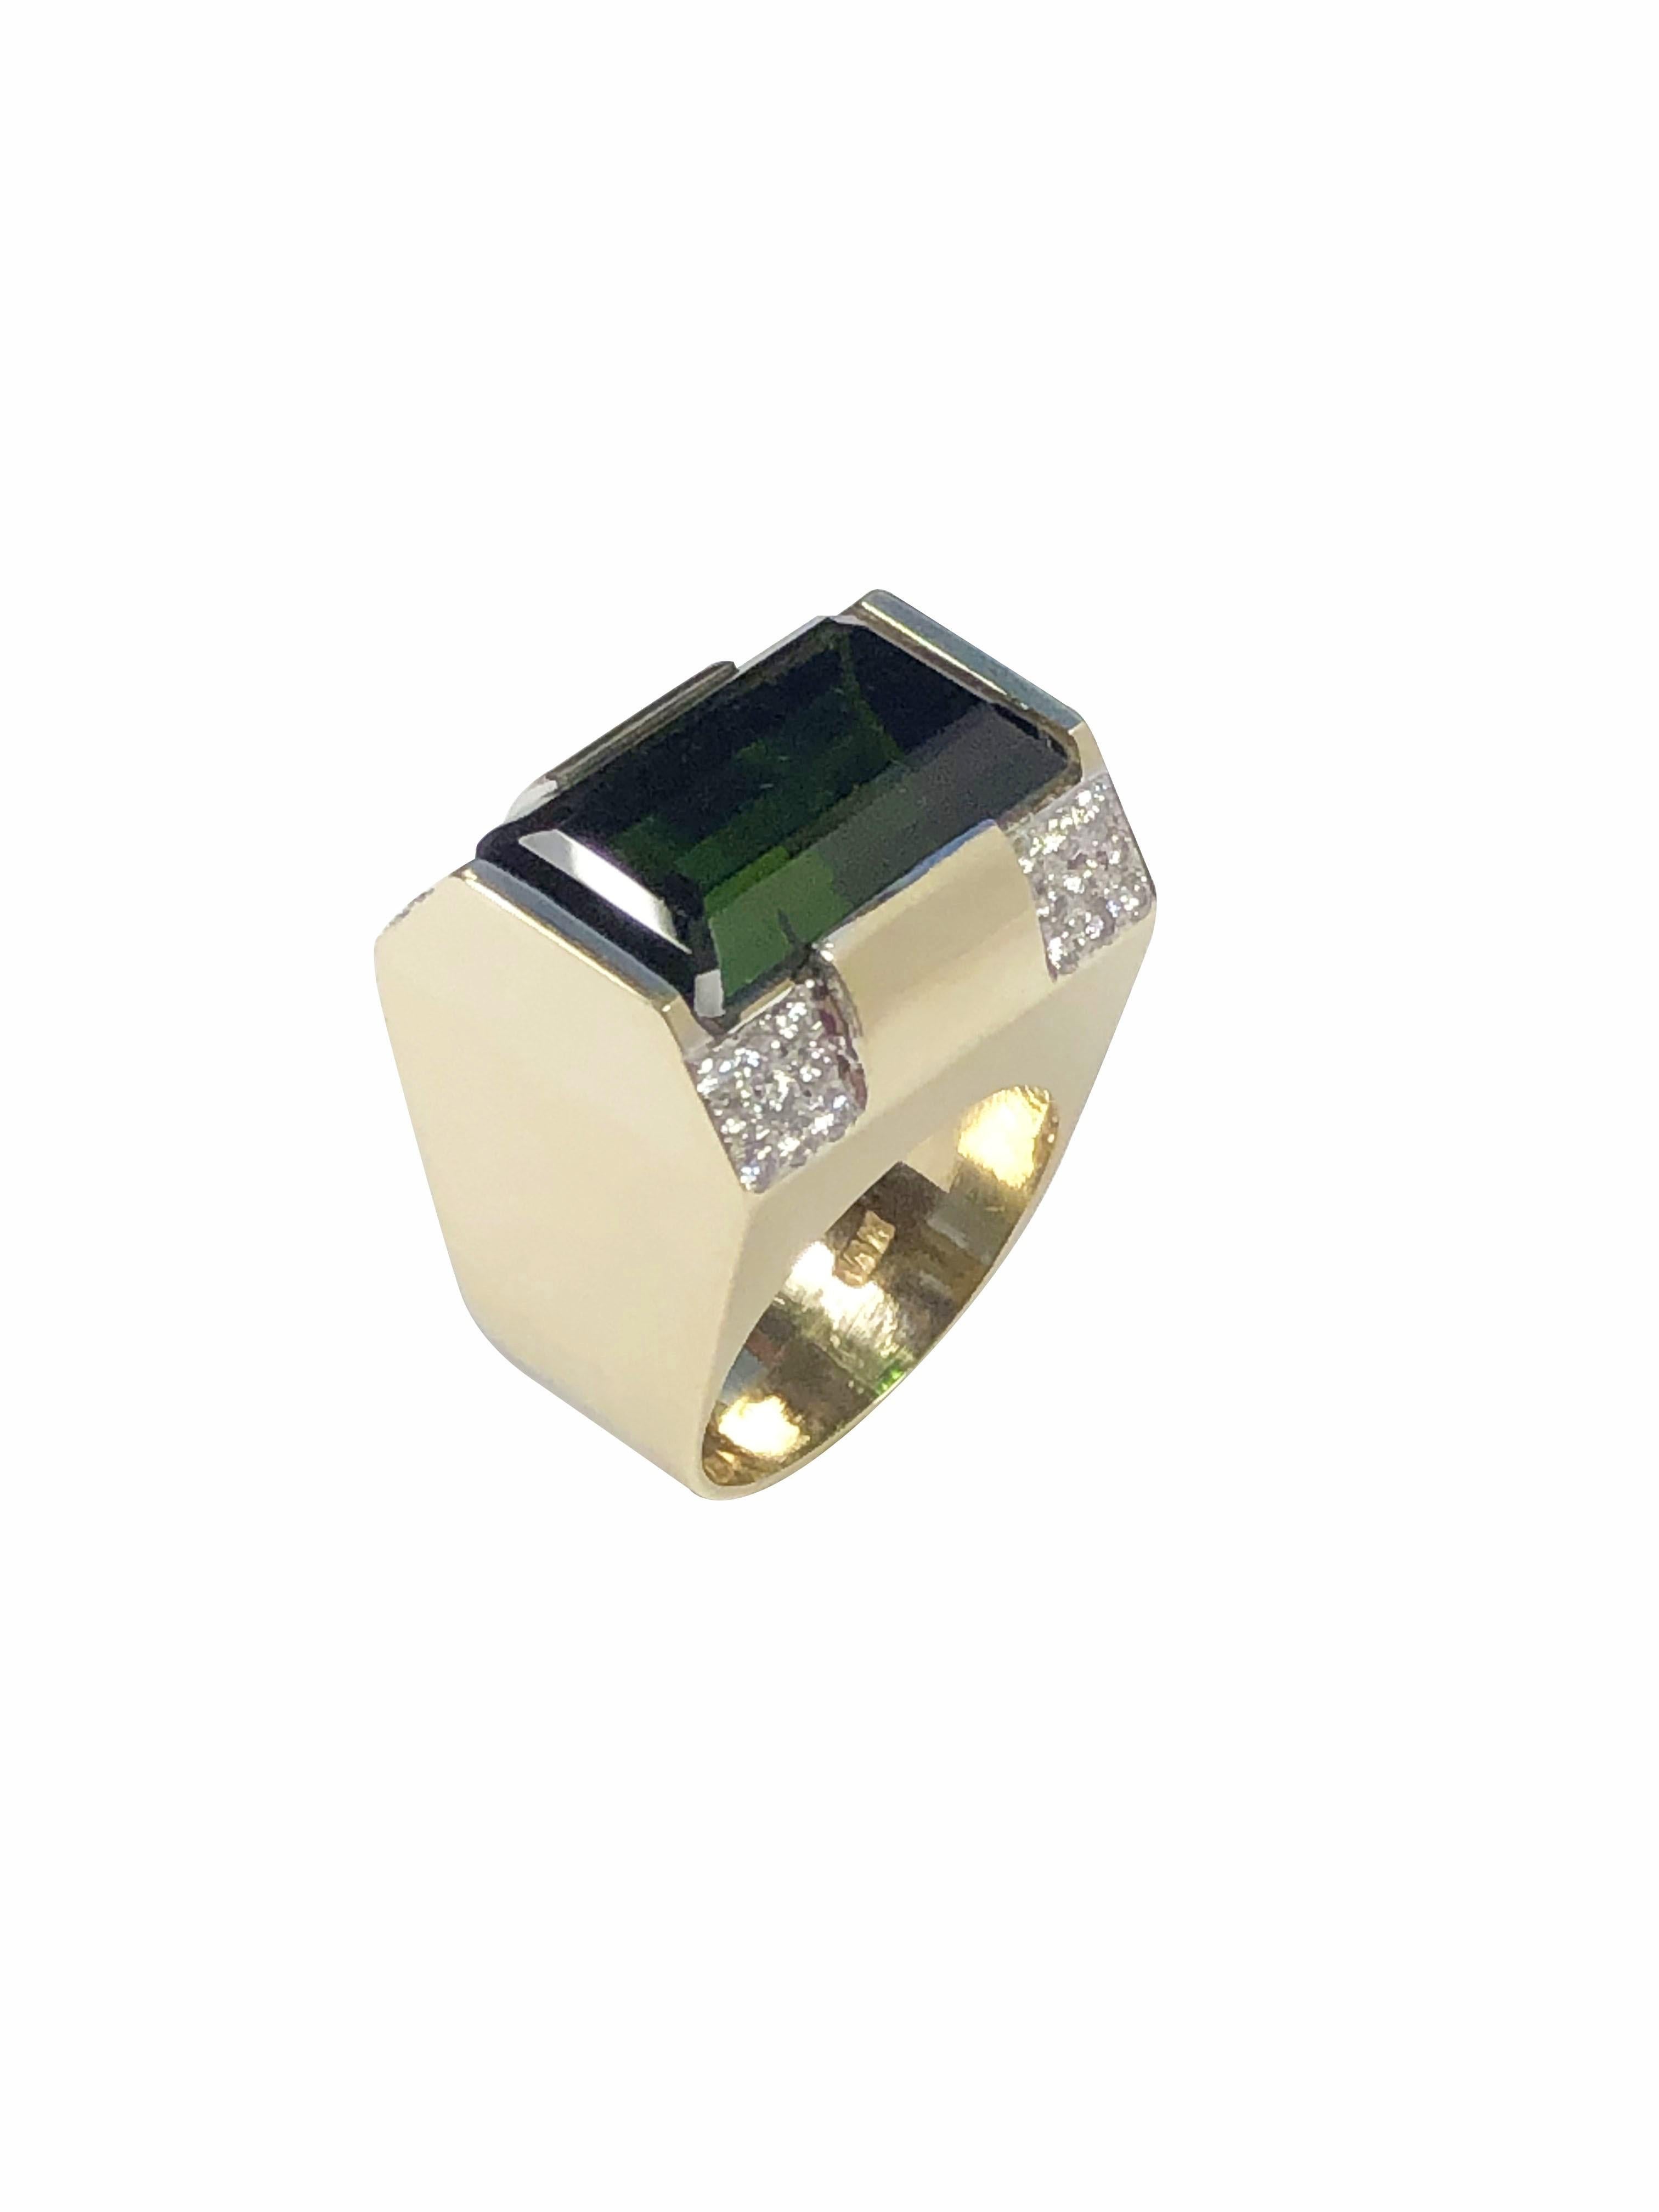 Emerald Cut M J Savitt Large Tourmaline Diamond and Yellow Gold Ring